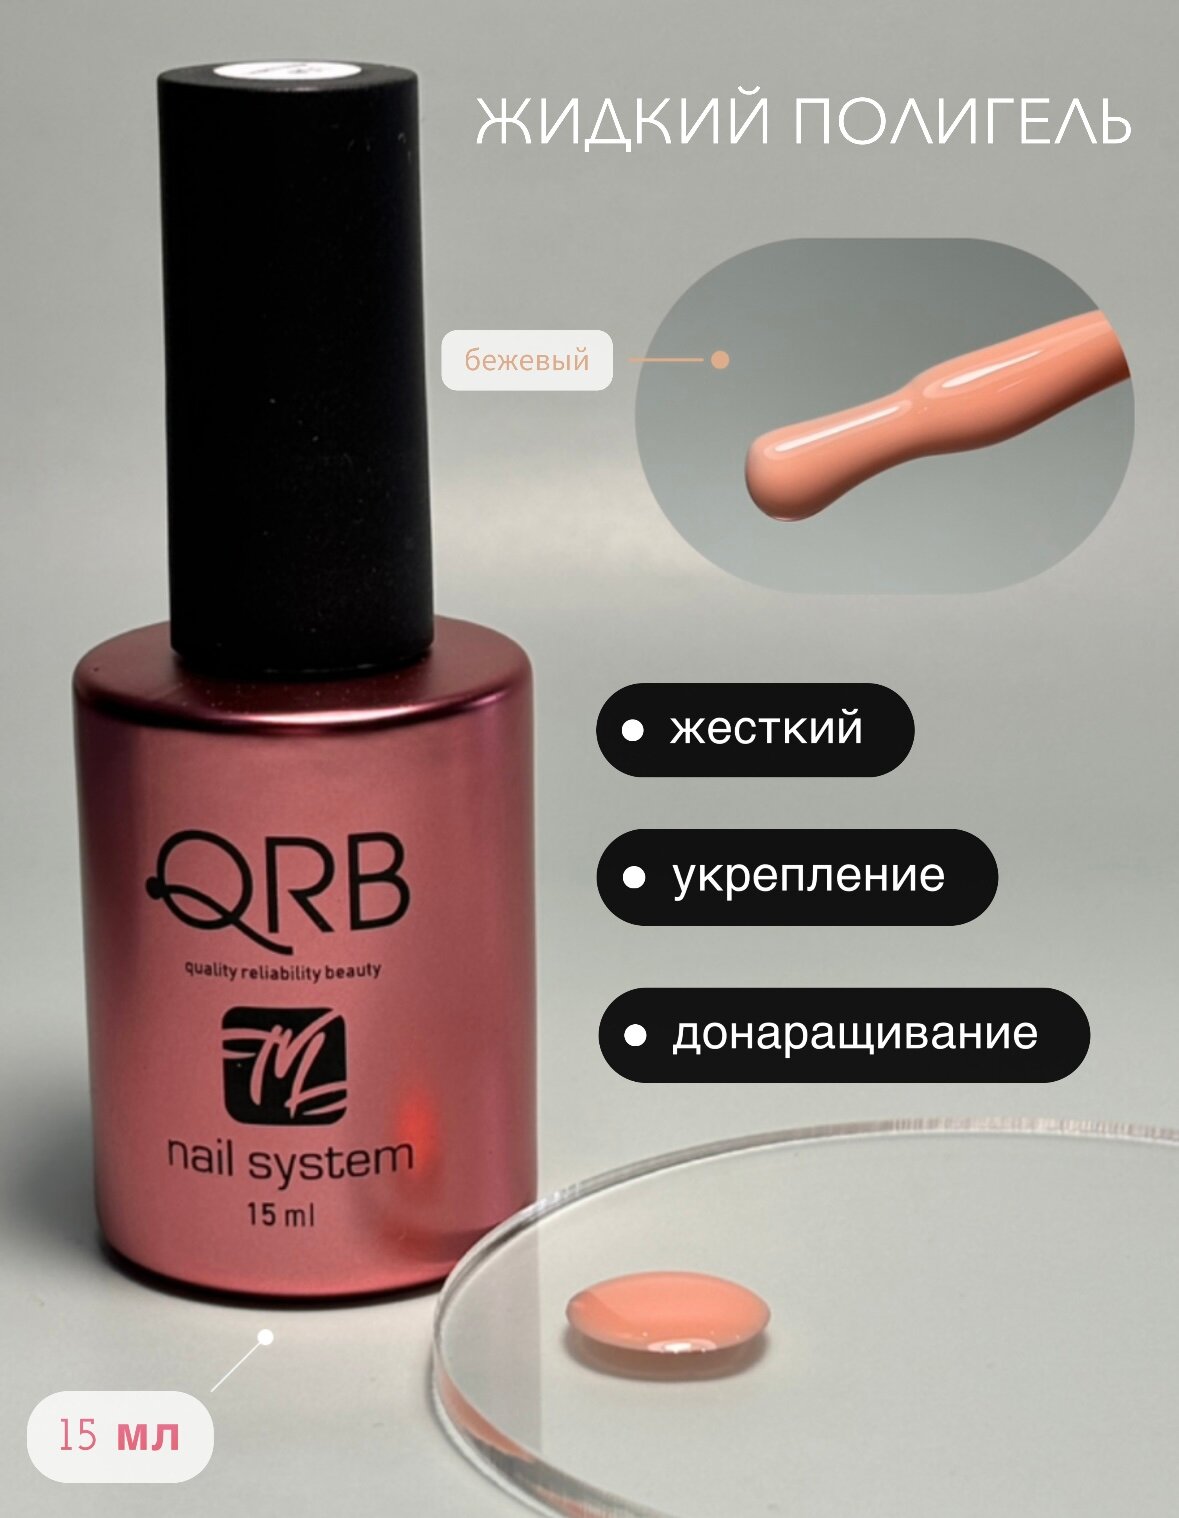 Жидкий полигель для ногтей № 1 бежевый QRB nail system